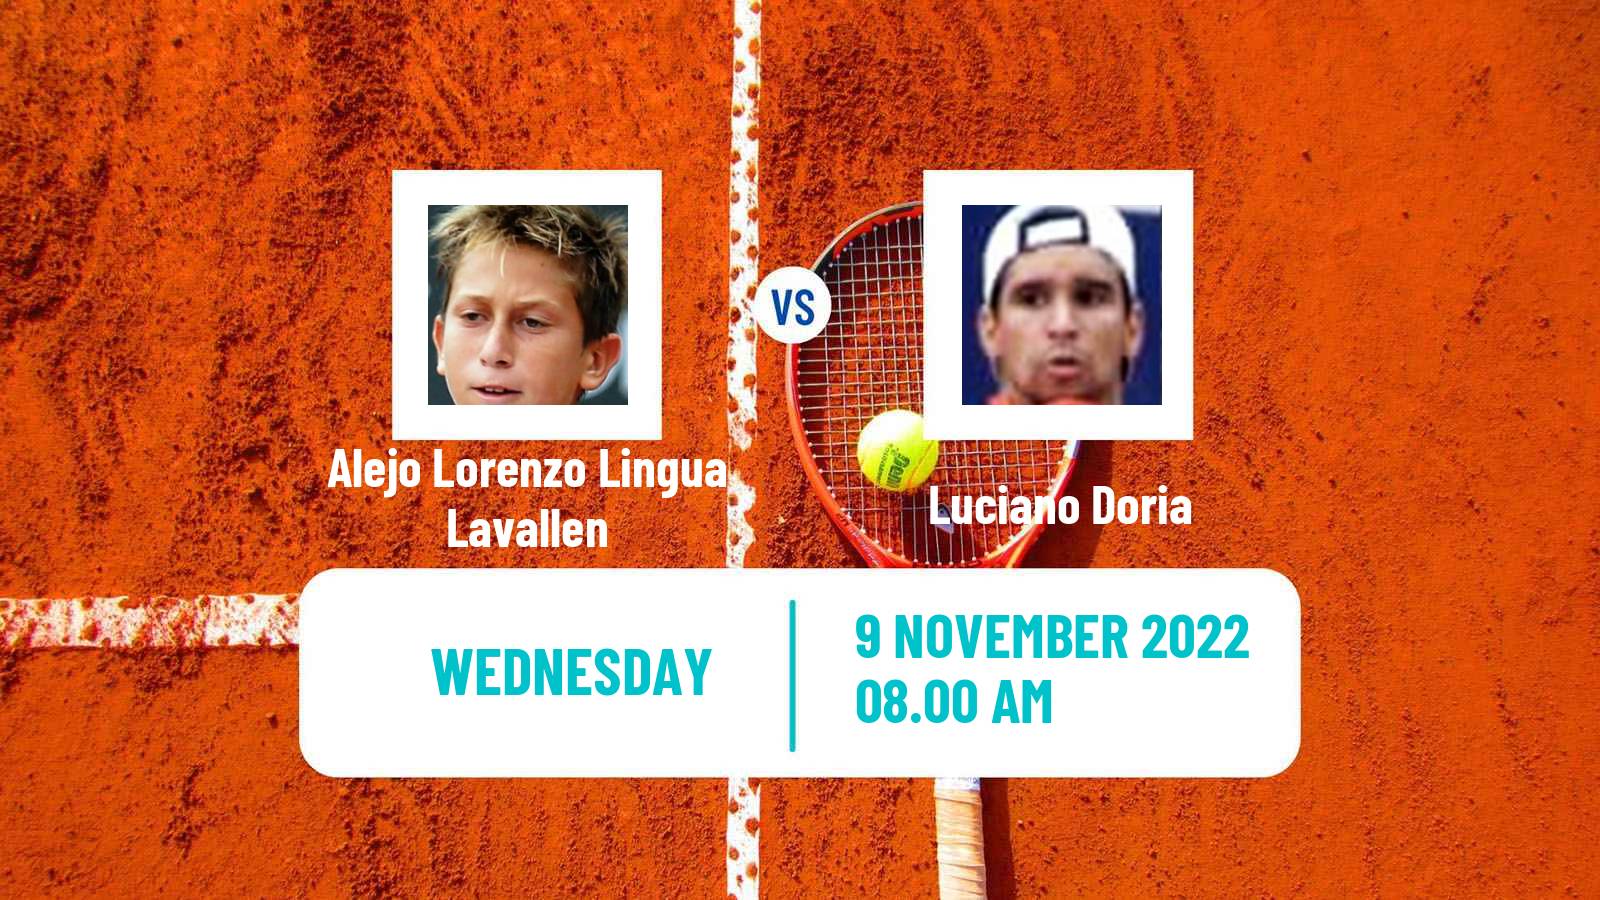 Tennis ITF Tournaments Alejo Lorenzo Lingua Lavallen - Luciano Doria